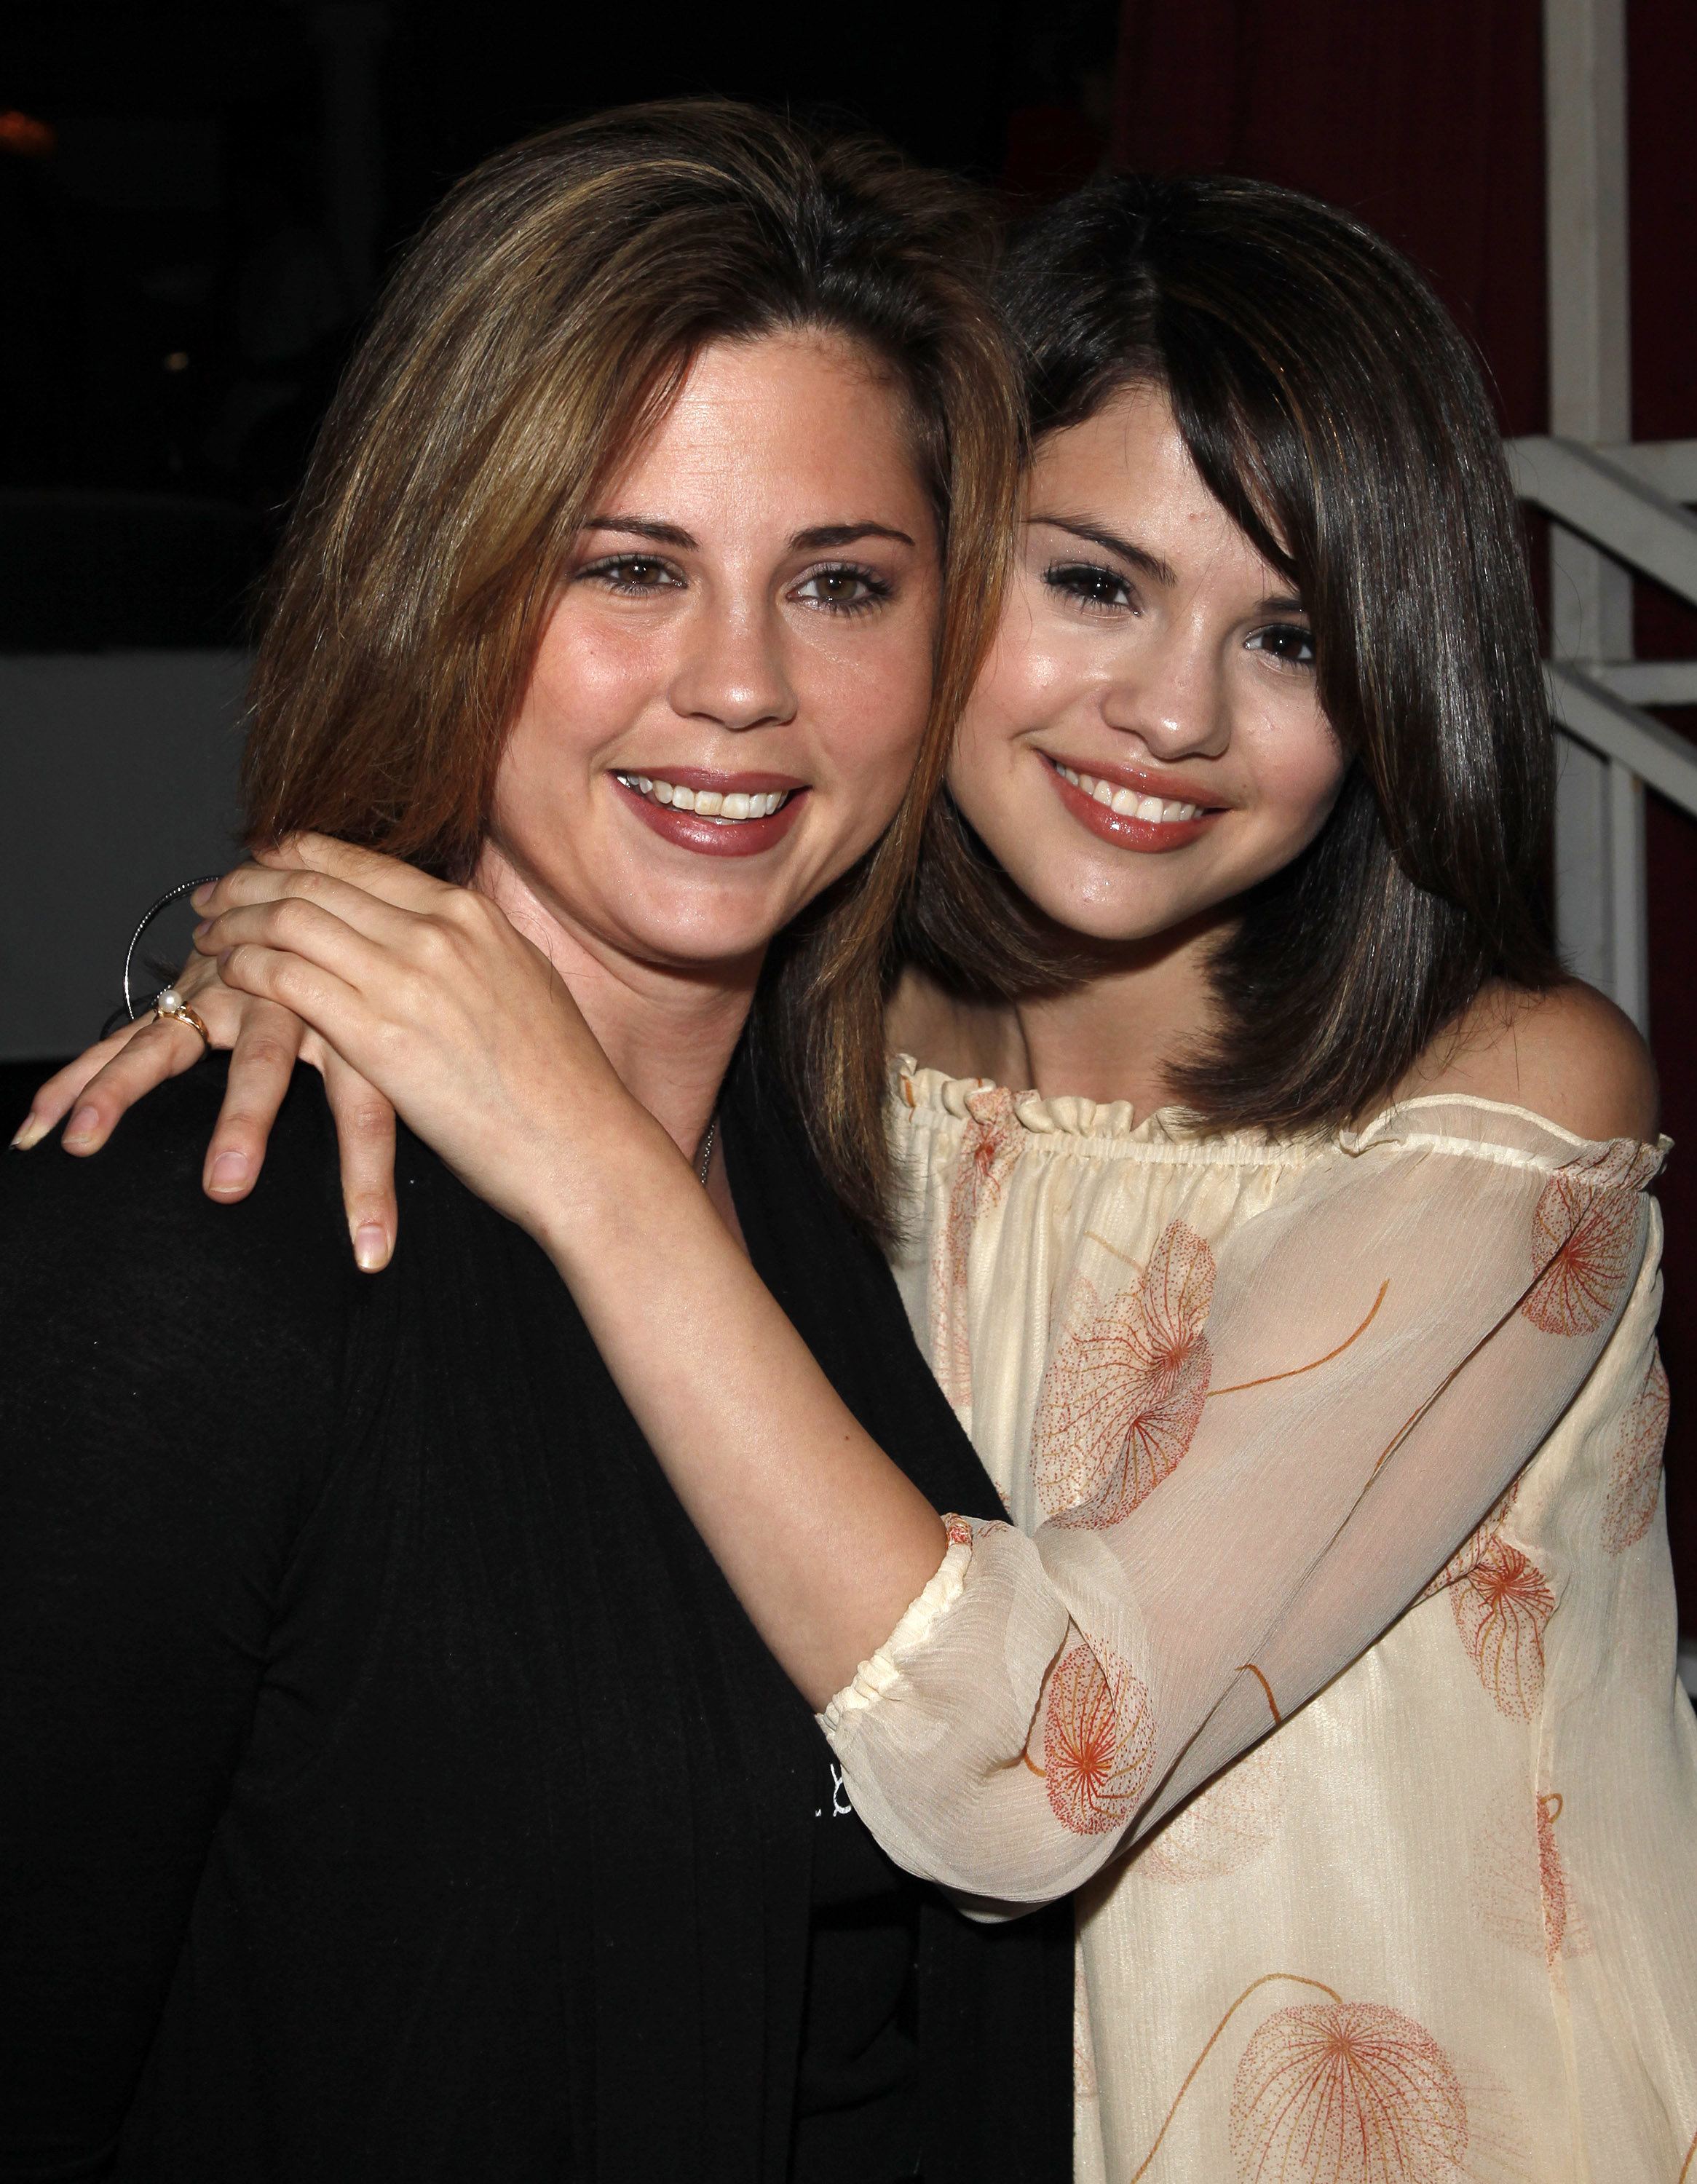 Avistamiento de Mandy Teefey y Selena Gomez en Hollywood en Los Angeles, California, el 28 de junio de 2009 | Fuente: Getty Images